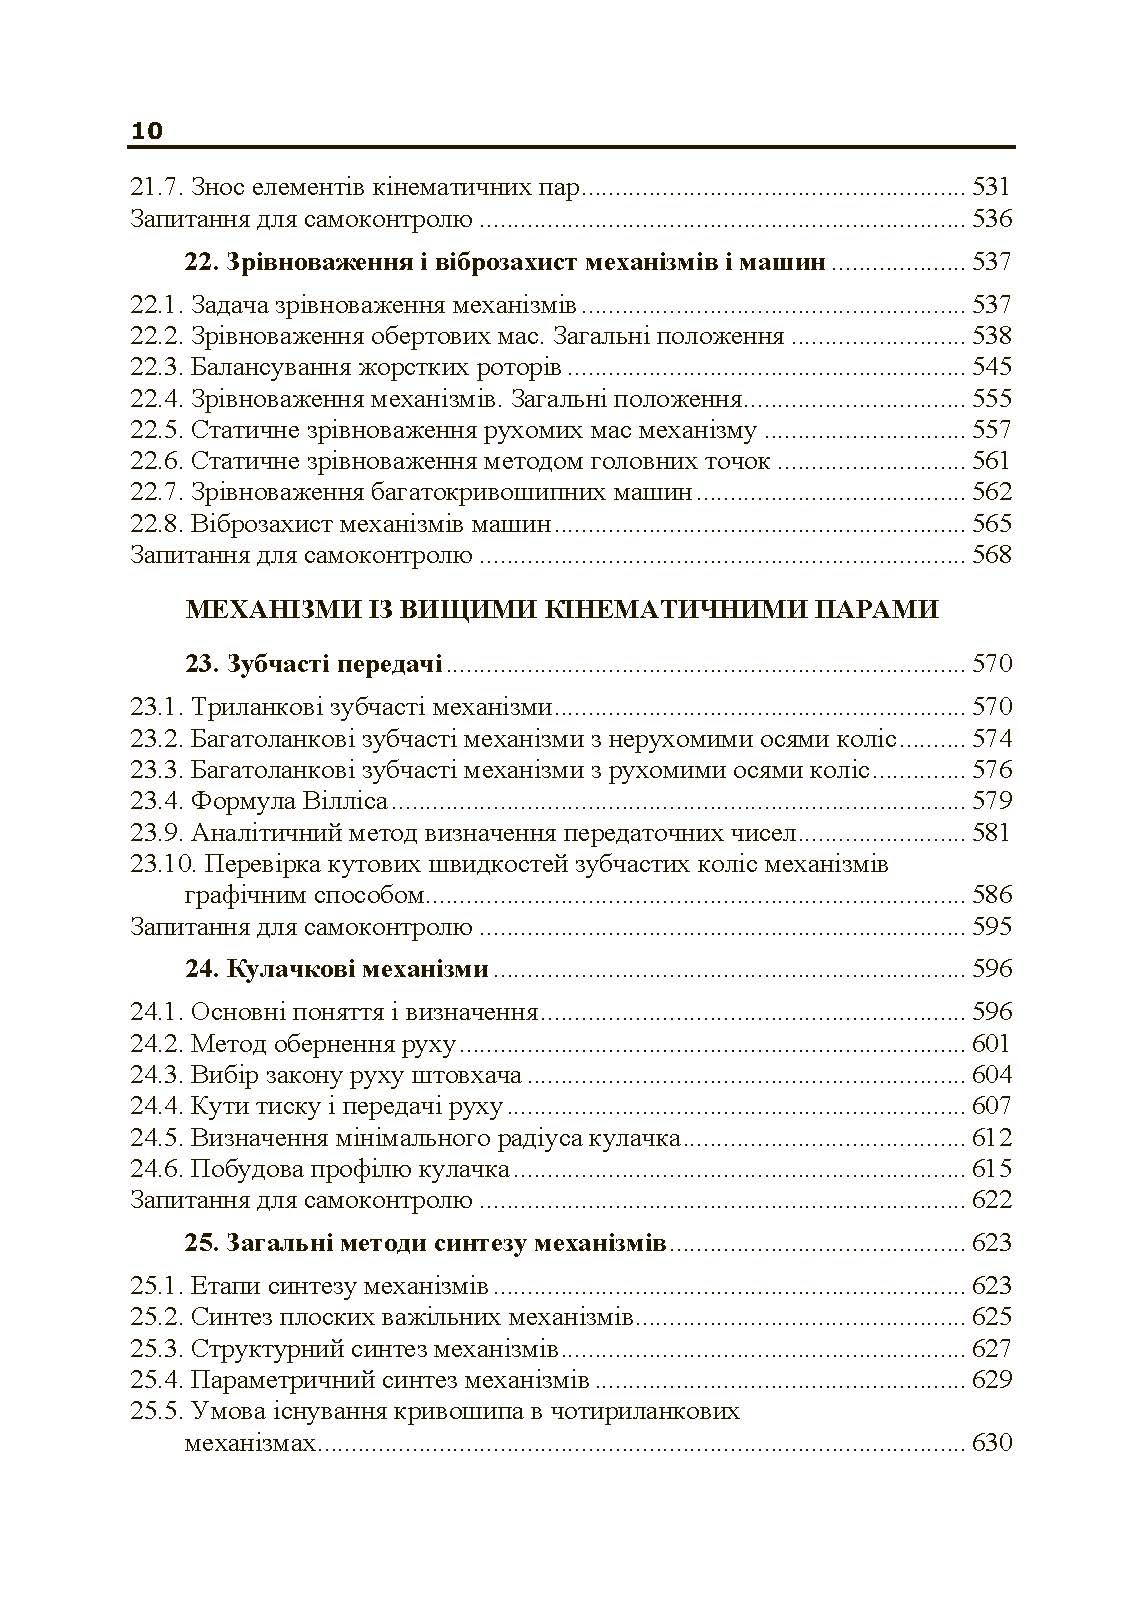 Учебная литература. Автор — В.М. Булгаков, О.М. Черниш. 